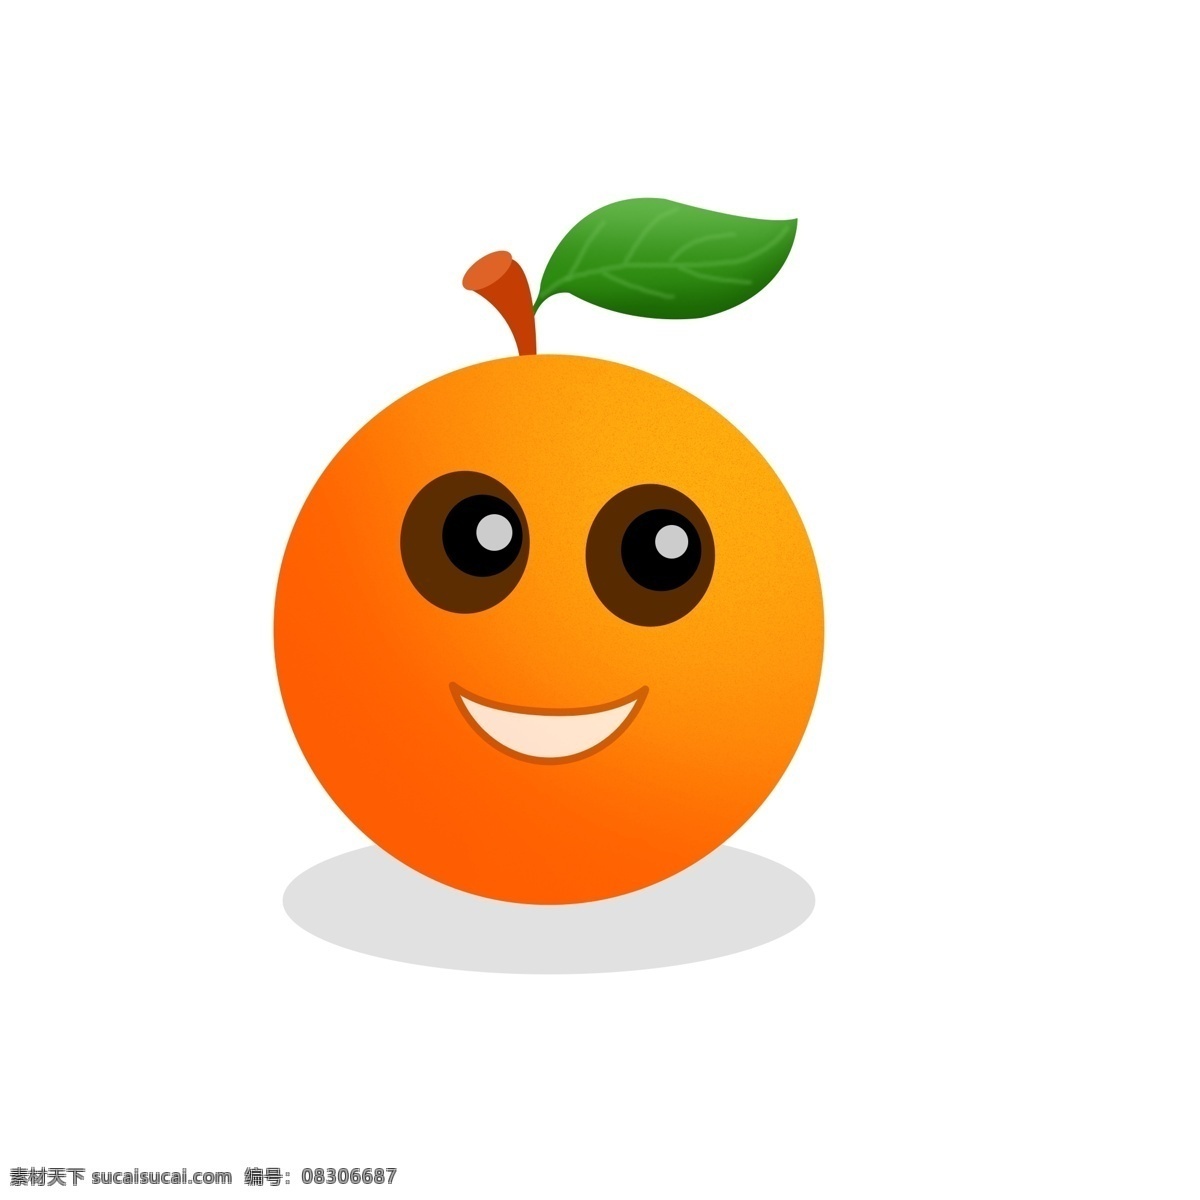 水果 卡通 手绘 橙子 商用 可爱 食物 橙子哦